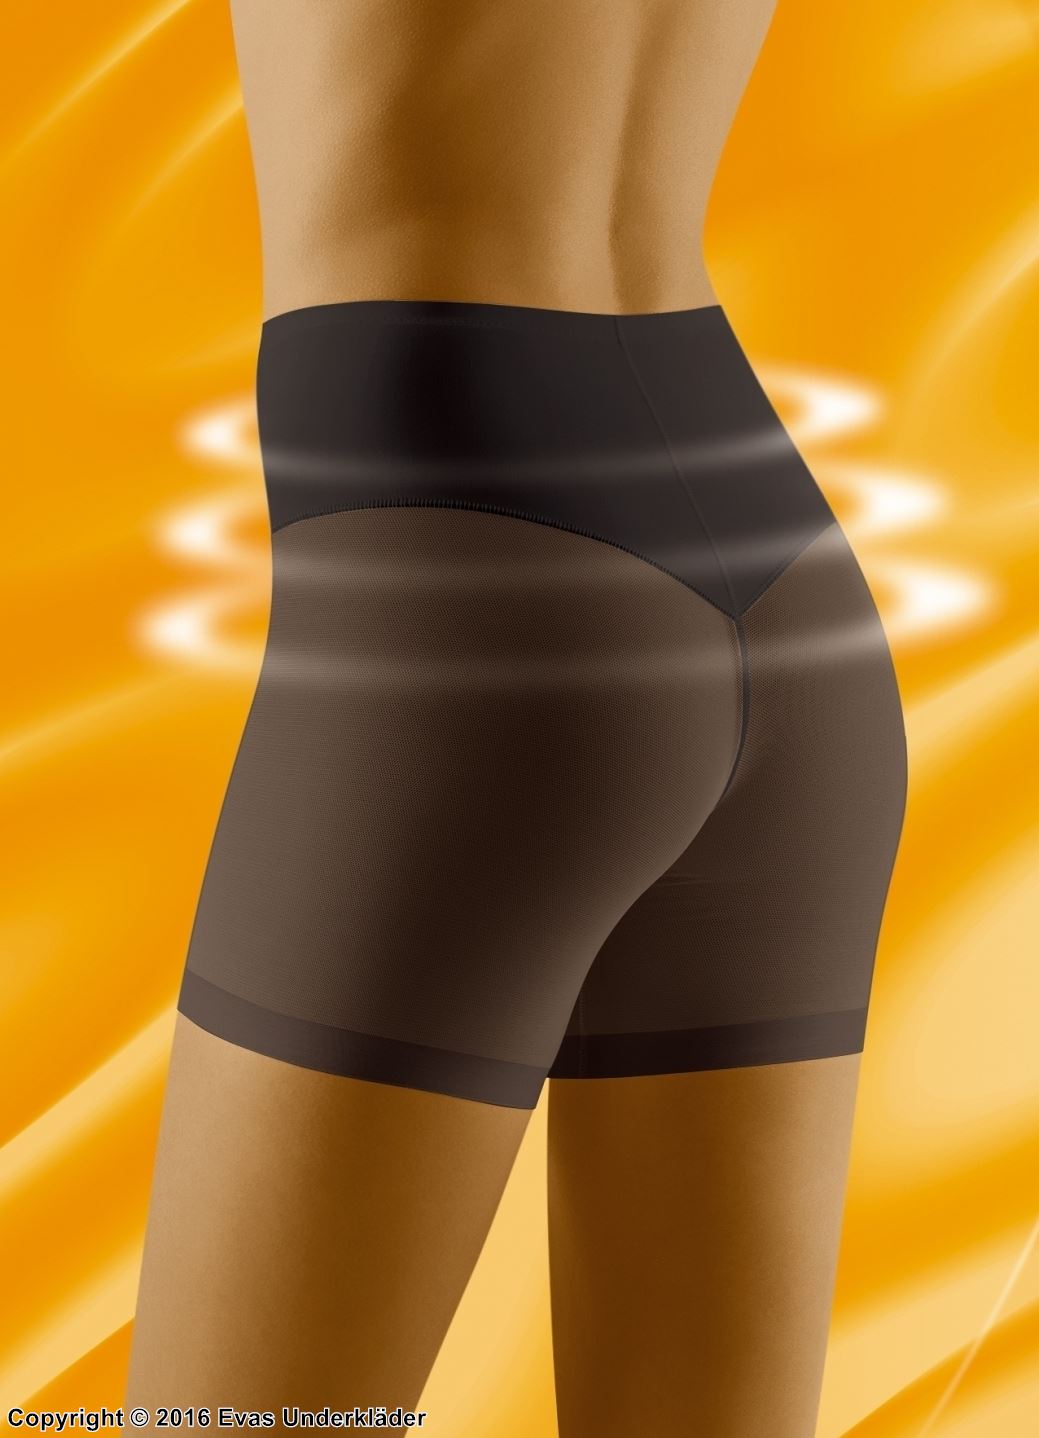 Formende boxertruse, lett formende effekt, gjennomsiktige bukseben